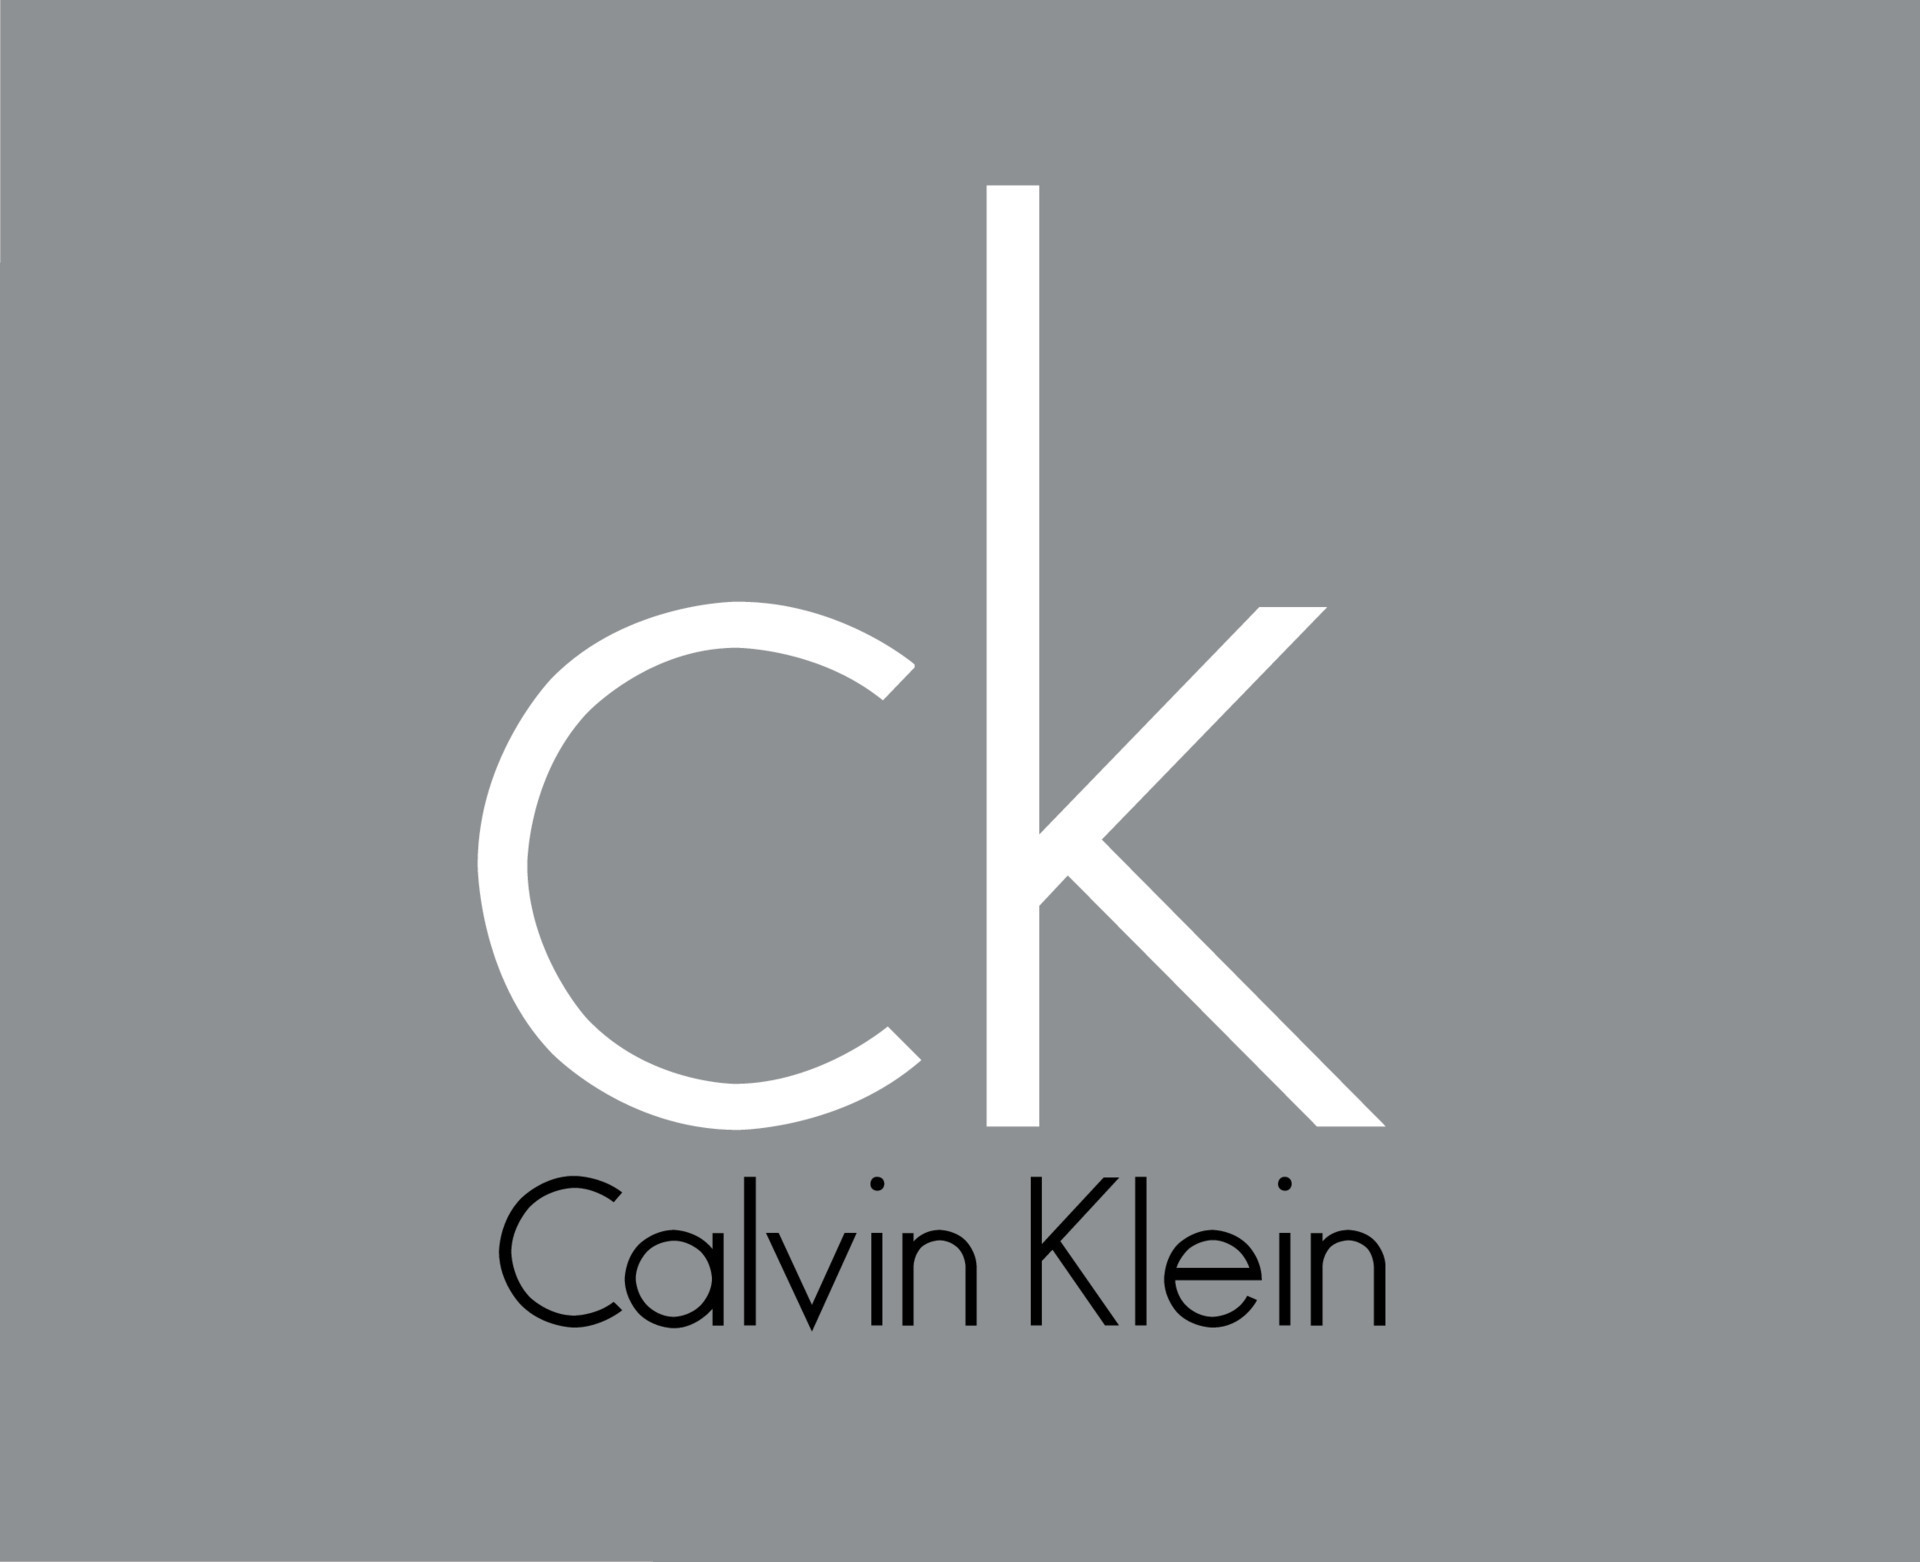 Calvin Klein Logo Brand Clothes Symbol With Name Design Fashion Vector ...